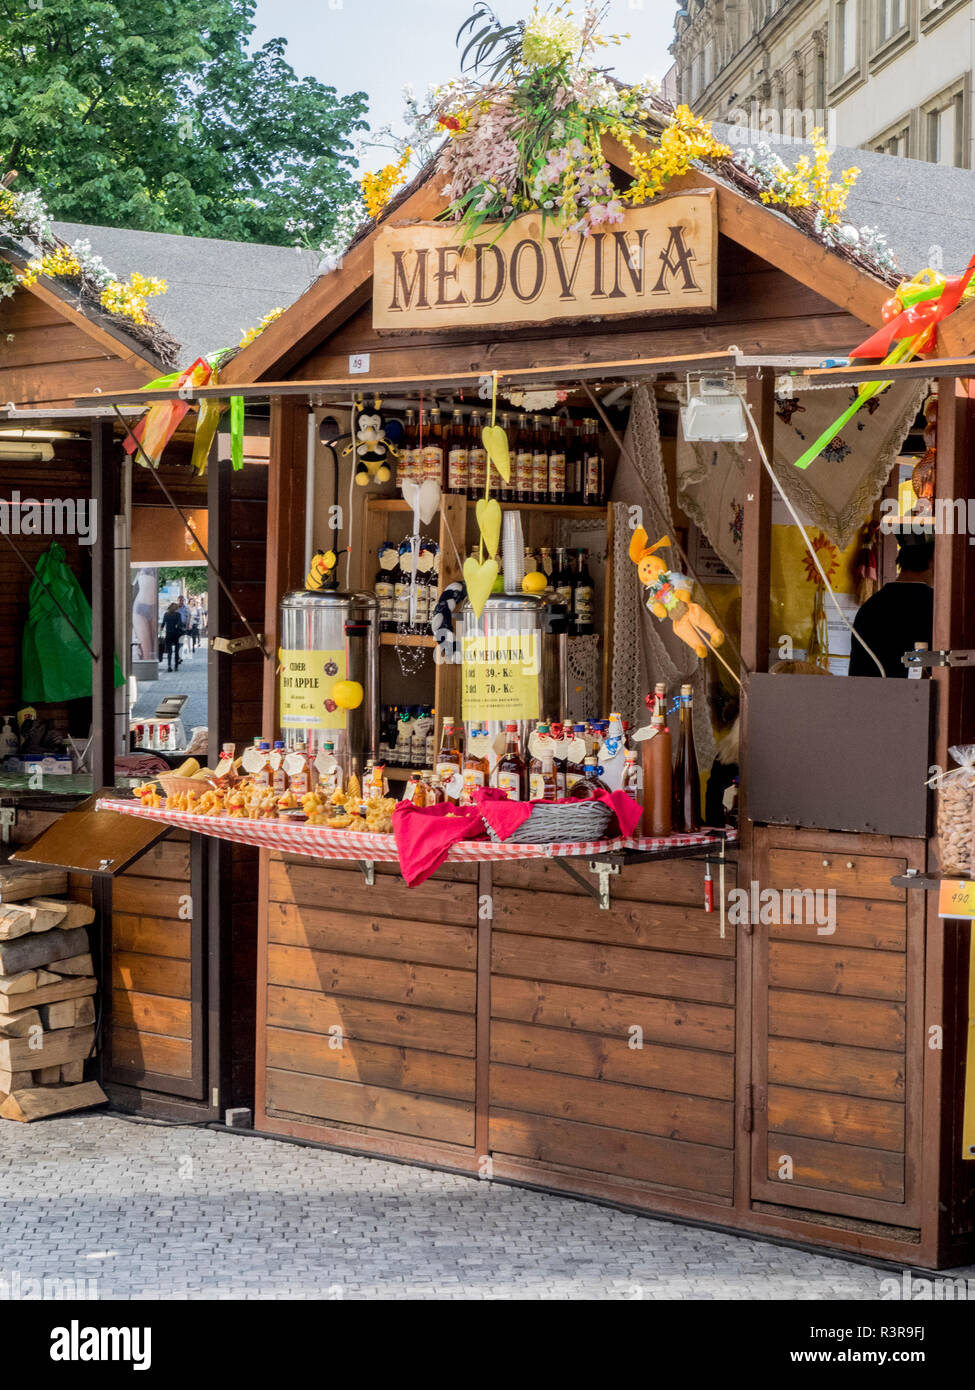 Repubblica Ceca, Praga. Chioschi in legno che offrono souvenir e prodotti alimentari lungo le strade della città vecchia. Foto Stock